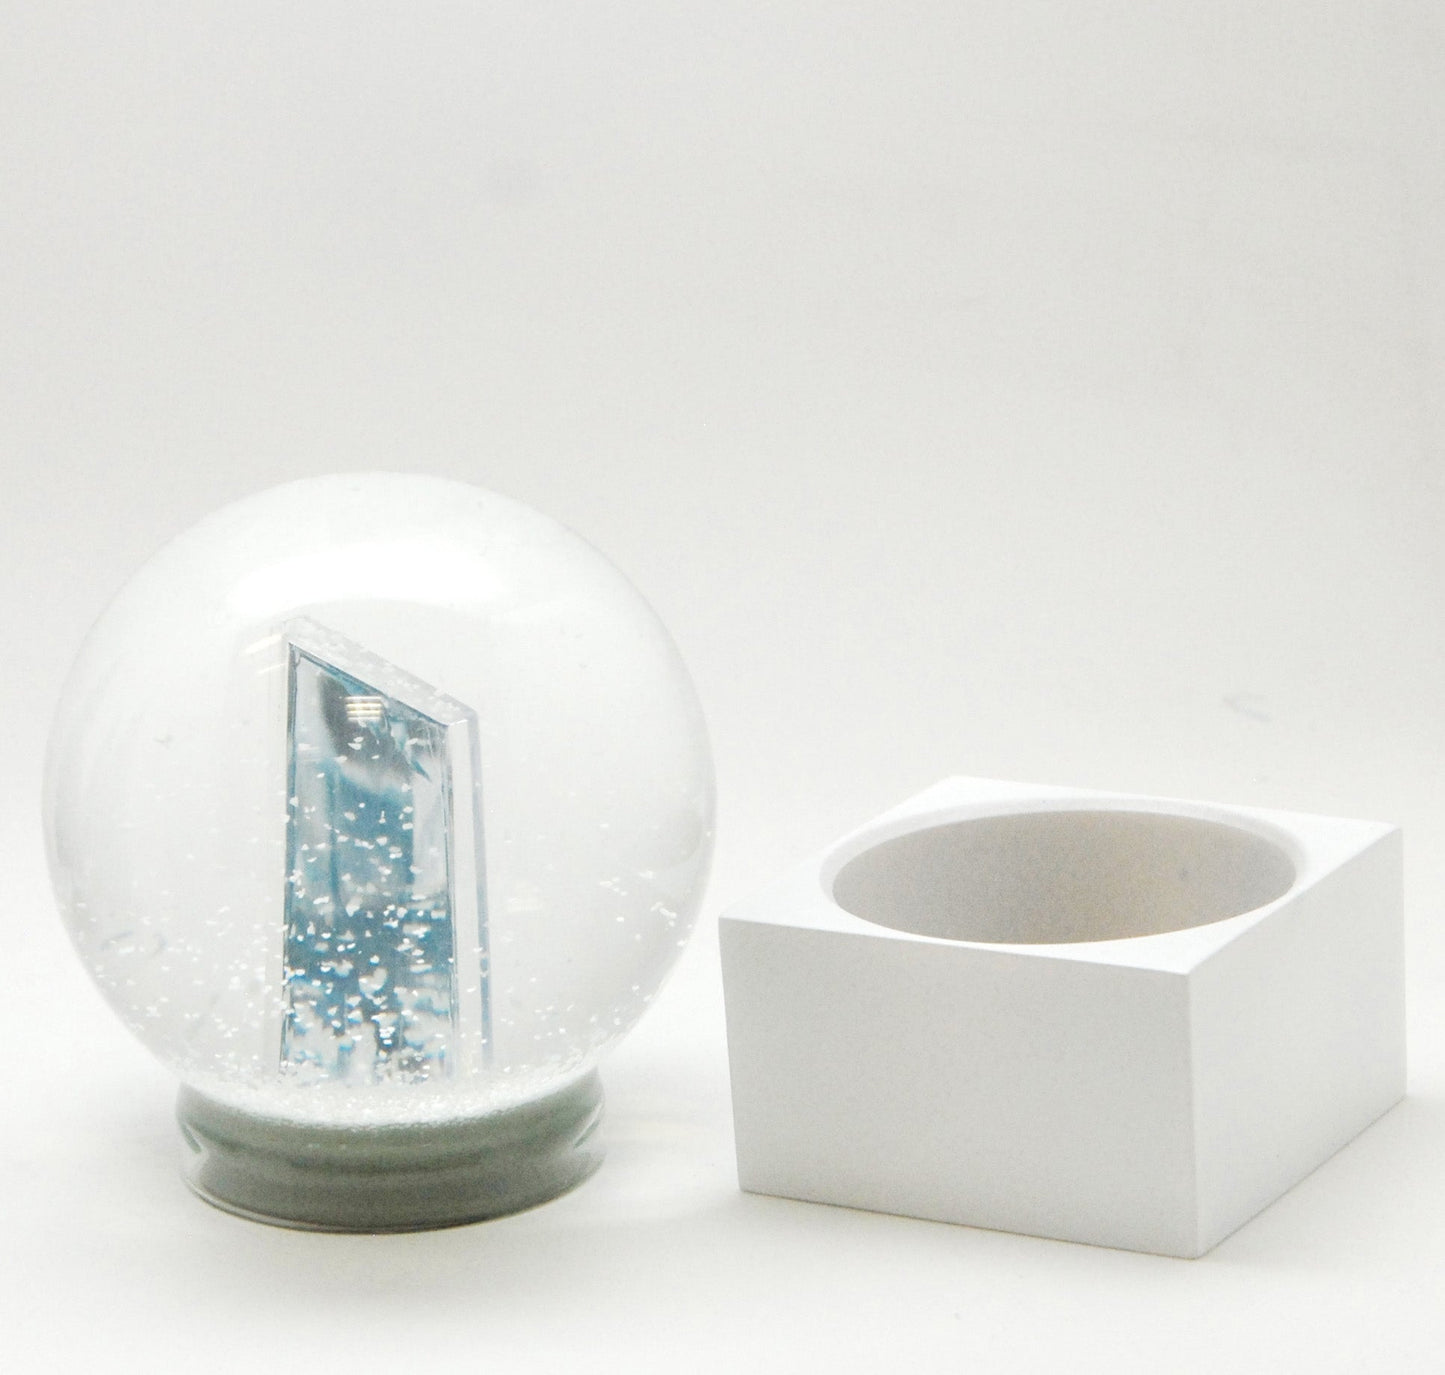 Bastelset mit 100mm Glas für DIY-Schneekugel mit Fotoeinsatz mit Polyresin-Sockel weiß eckig - Schneekugelhaus